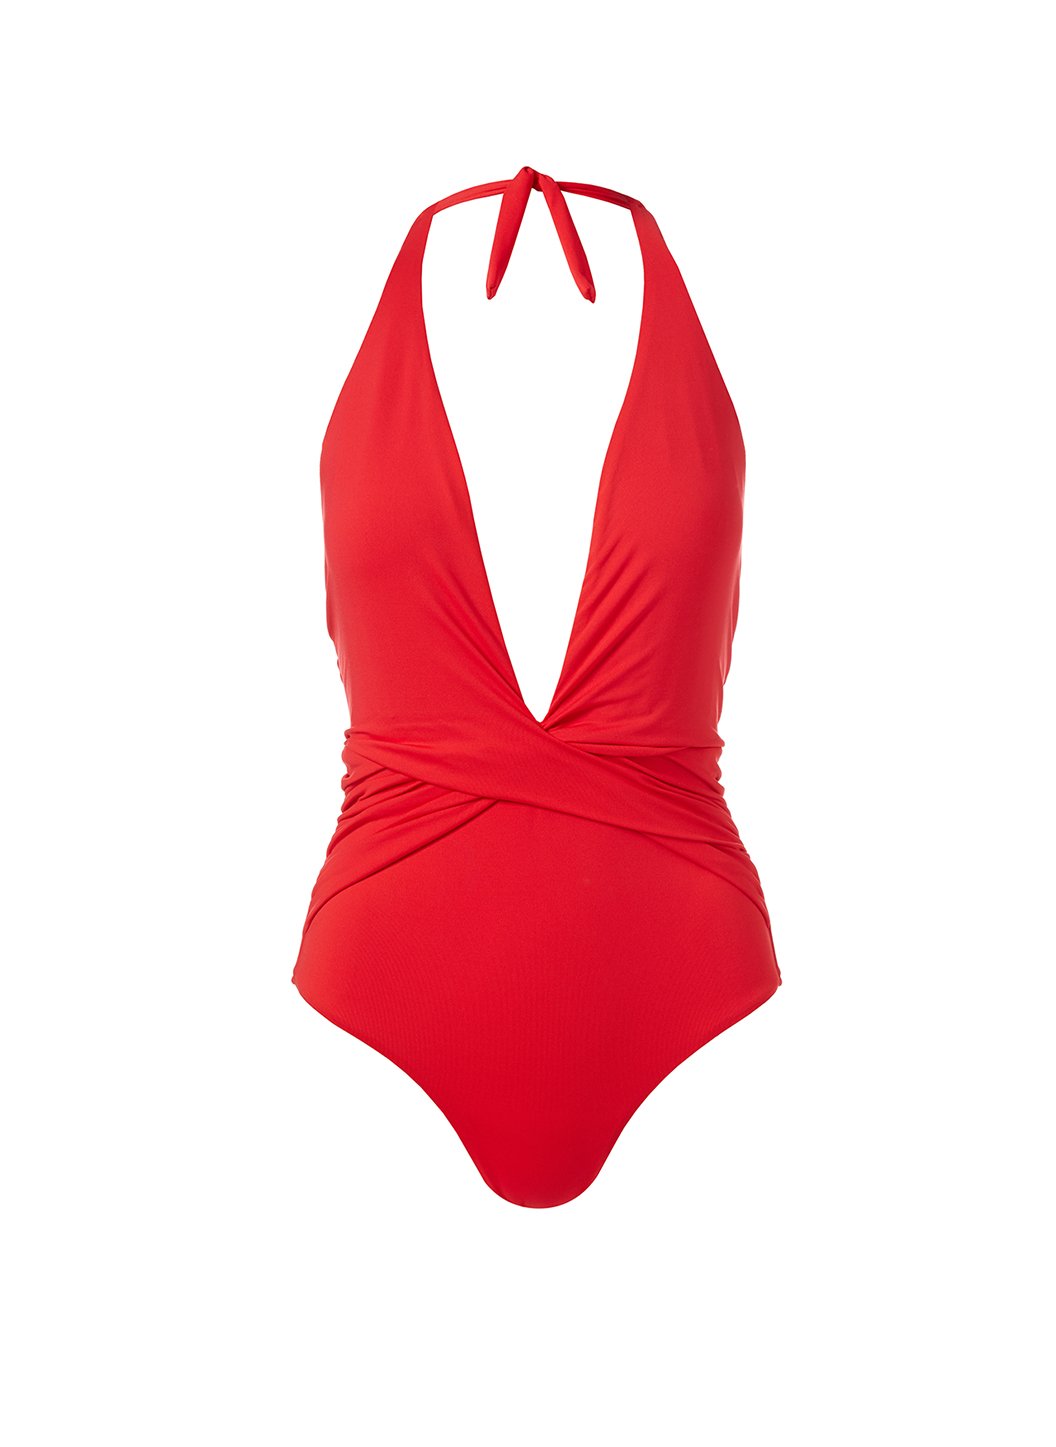 tahiti-red-swimsuit-Cutout